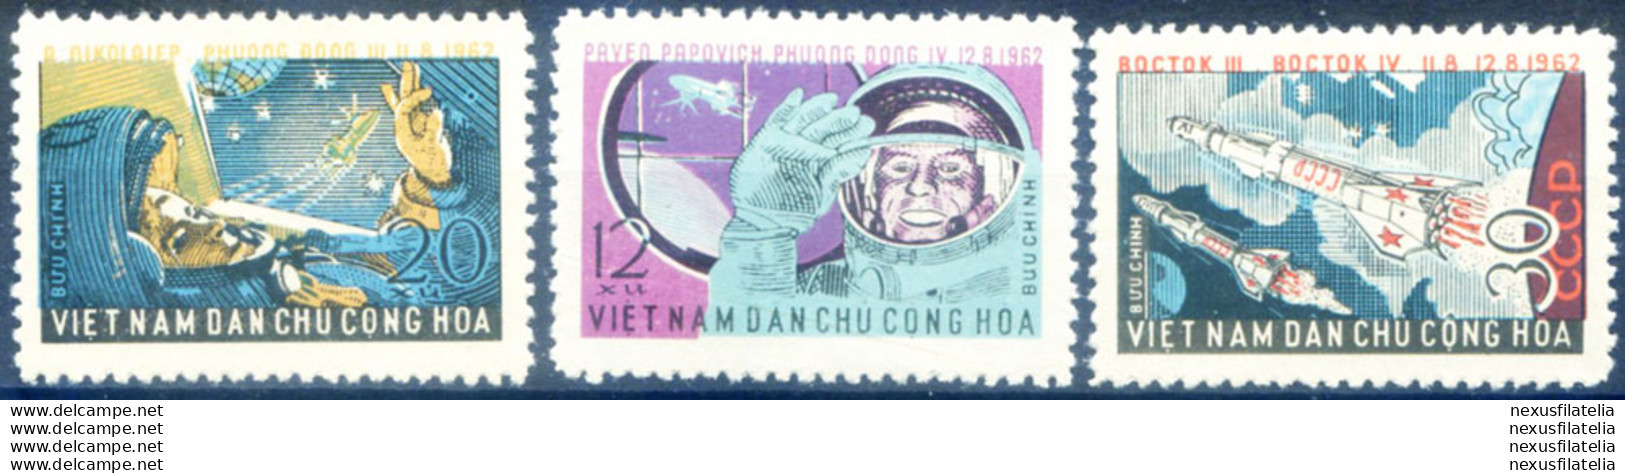 Astronautica 1962. - Vietnam